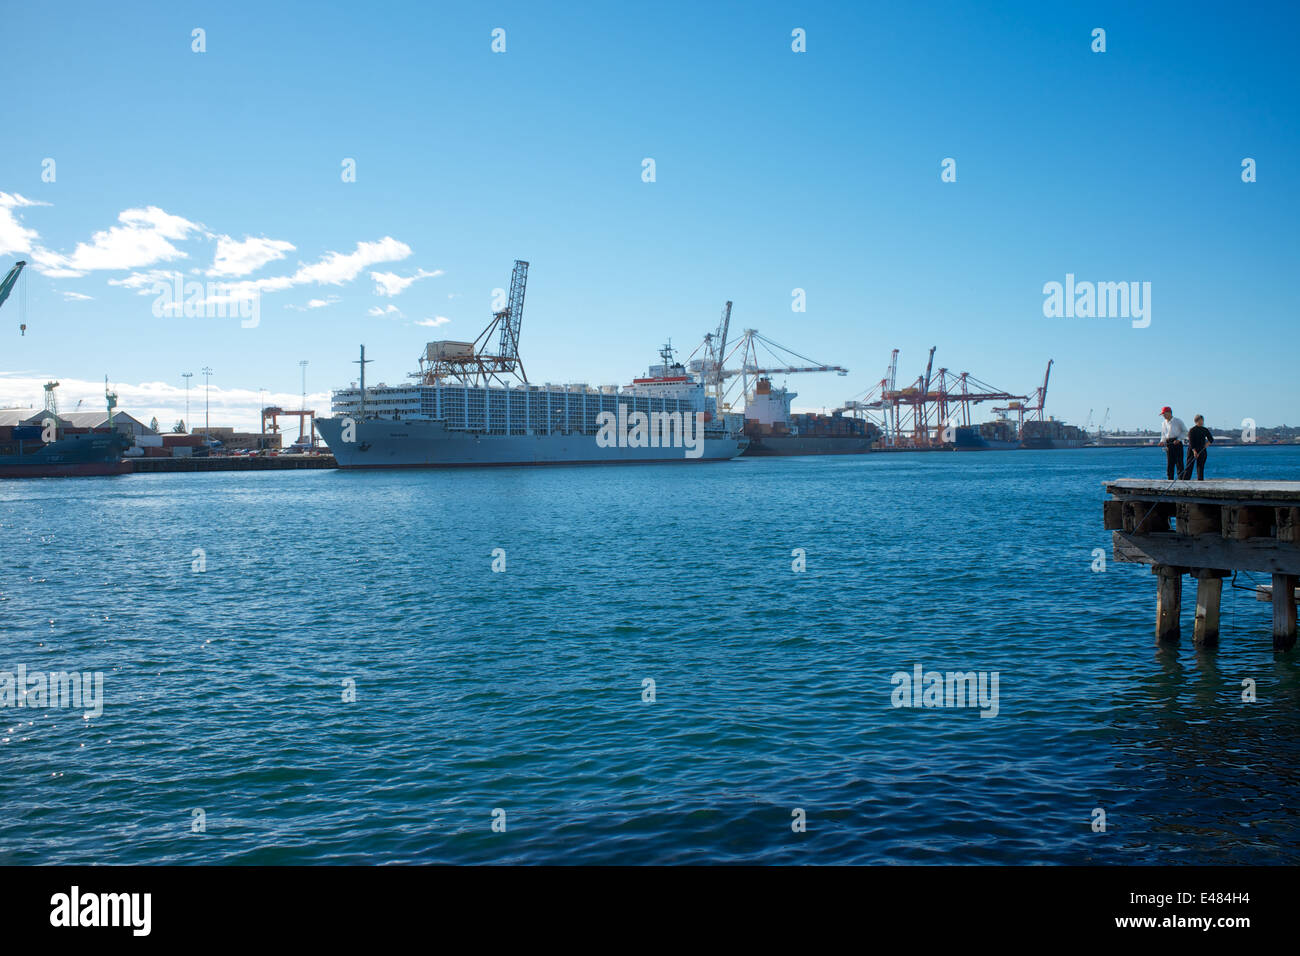 Der Hafen von Fremantle. Es gibt zwei Menschen Angeln am Pier auf der rechten Seite des Bildes.  Das Schiff ist die Maysora. Stockfoto